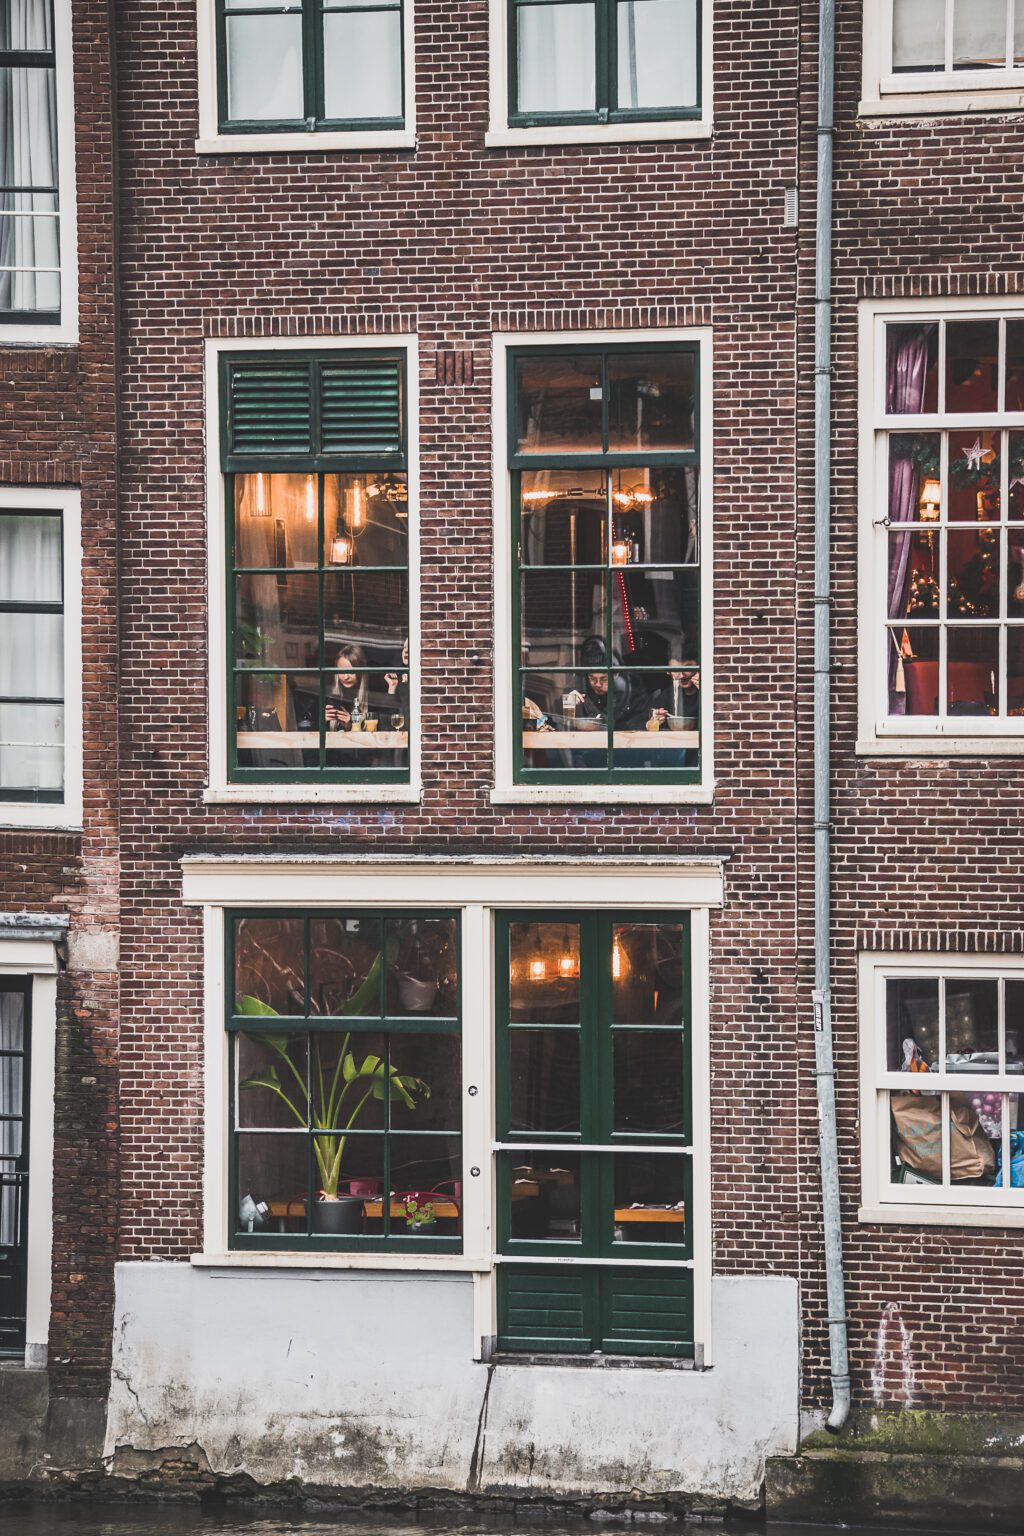 Amsterdam est la capitale dynamique des Pays-Bas et le résultat de siècles d'art et de culture. Cette ville vibrante et magnifique est pleine d'histoire et de vie, avec des canaux qui serpentent à travers la ville et des ponts éclairés de façon romantique. De l'emblématique Rijksmuseum regorgeant d'œuvres d'art de classe mondiale au paisible Vondelpark, ses rues pleines de musées, de boutiques et de cafés chaleureux, Amsterdam est la destination idéale pour une escapade d'un week-end.